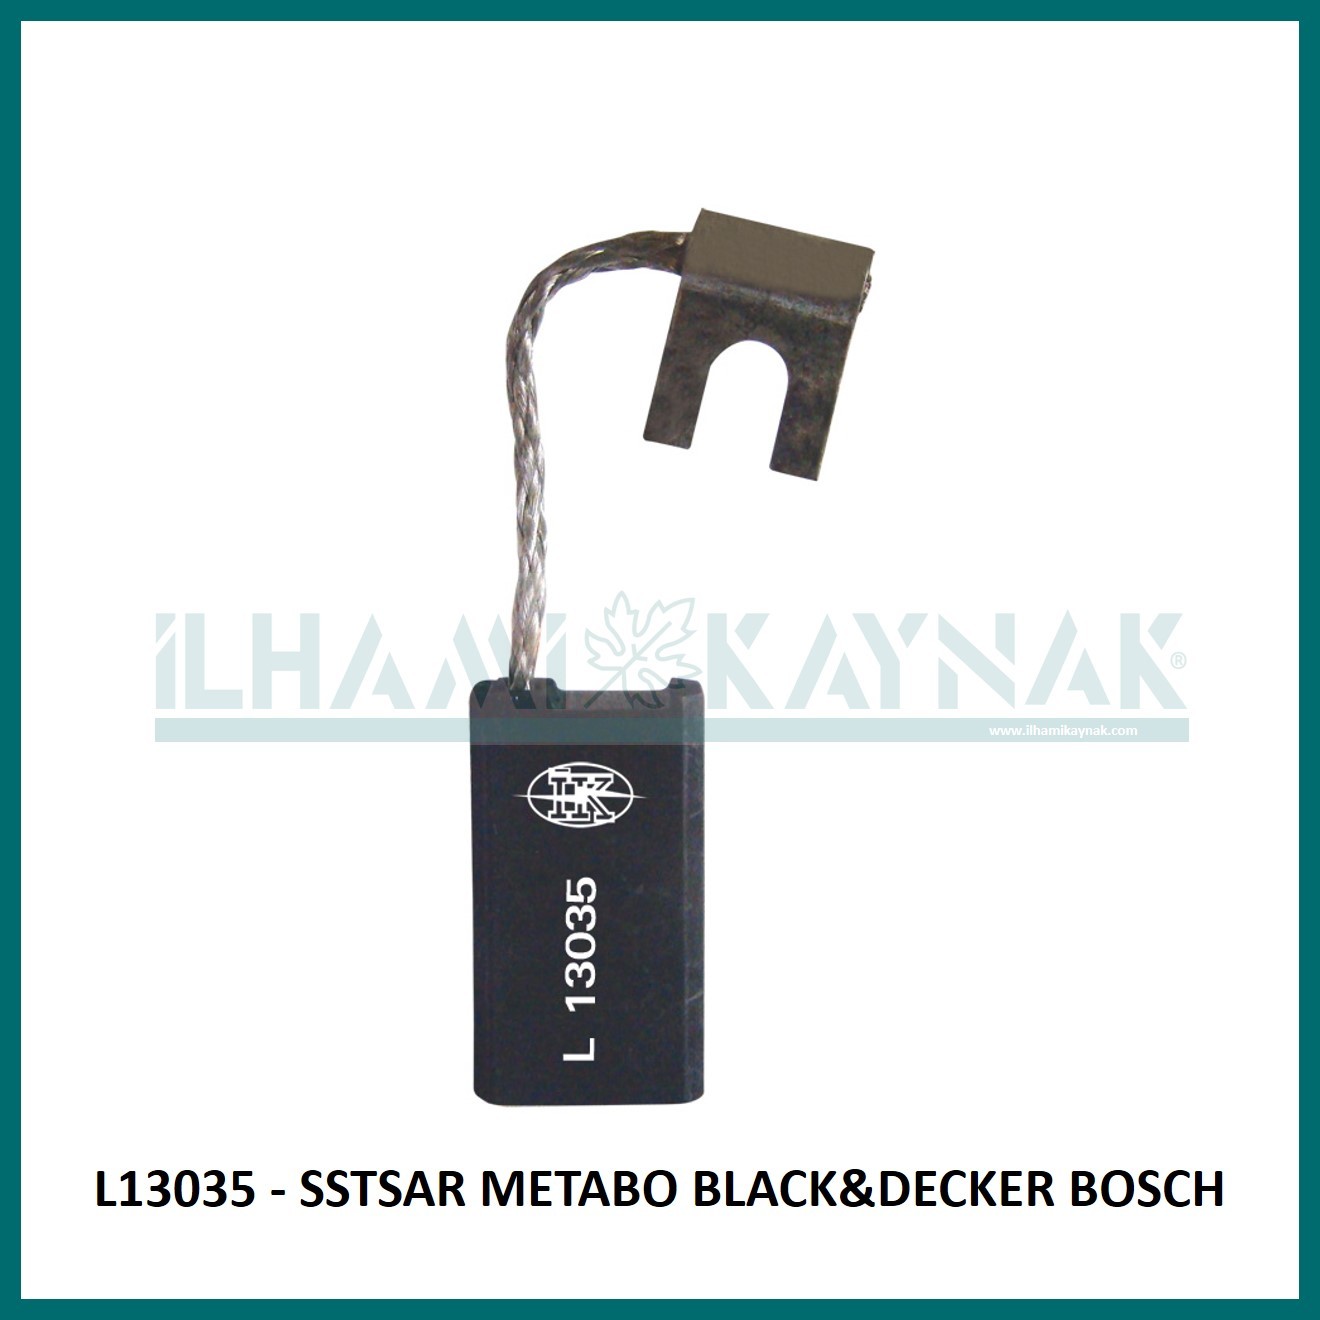 L13035 - SSTAR METABO BLACK&DECKER BOSCH - 6*12*22 mm - Minimum Satın Alım: 10 Adet